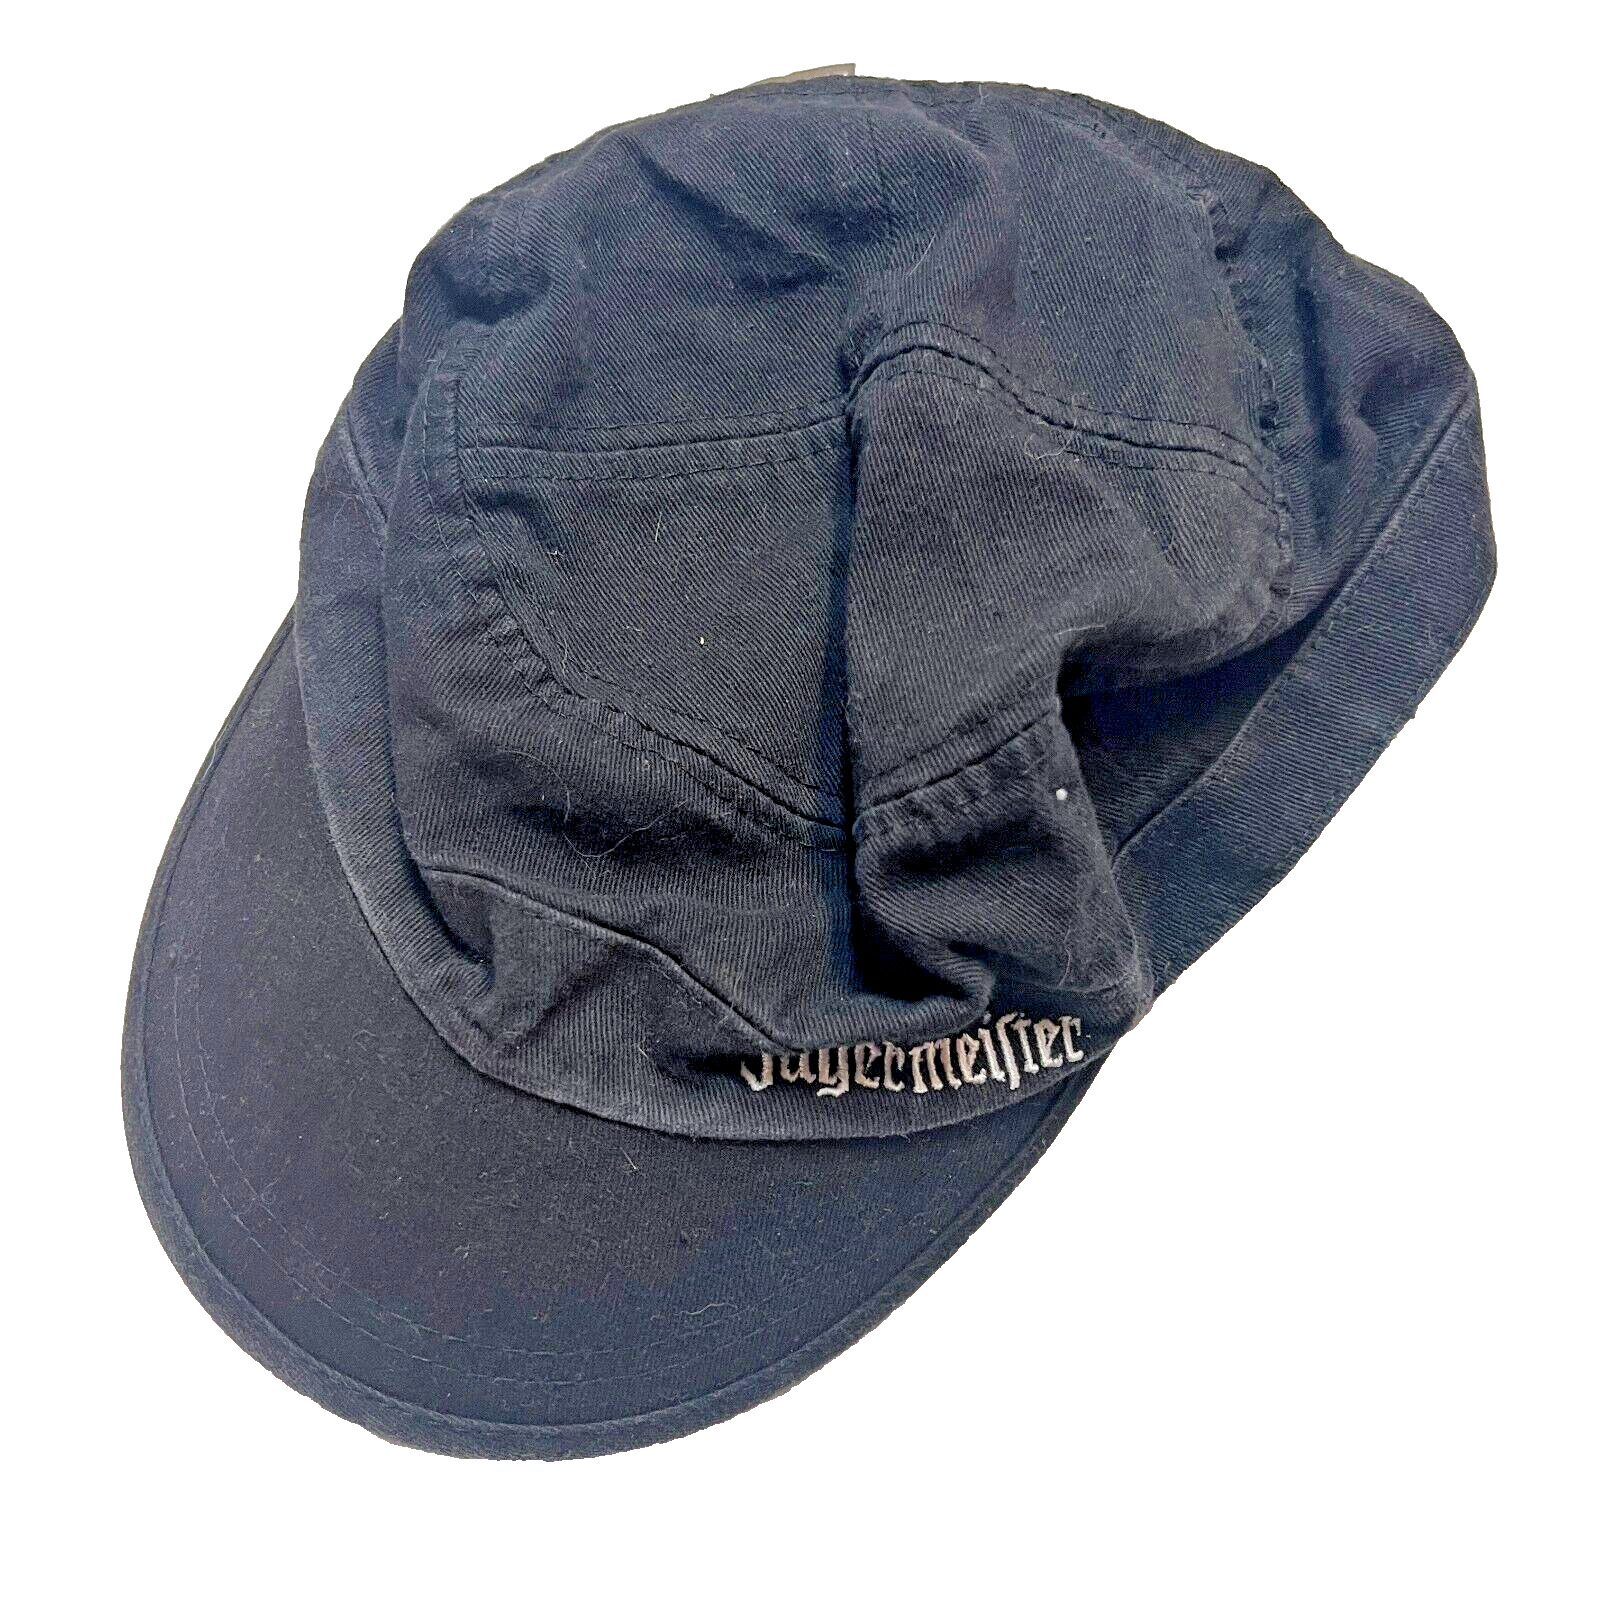 Vintage Jagermeister Adjustable Strapback Embroidered Stitch Black Adult Hat Cap